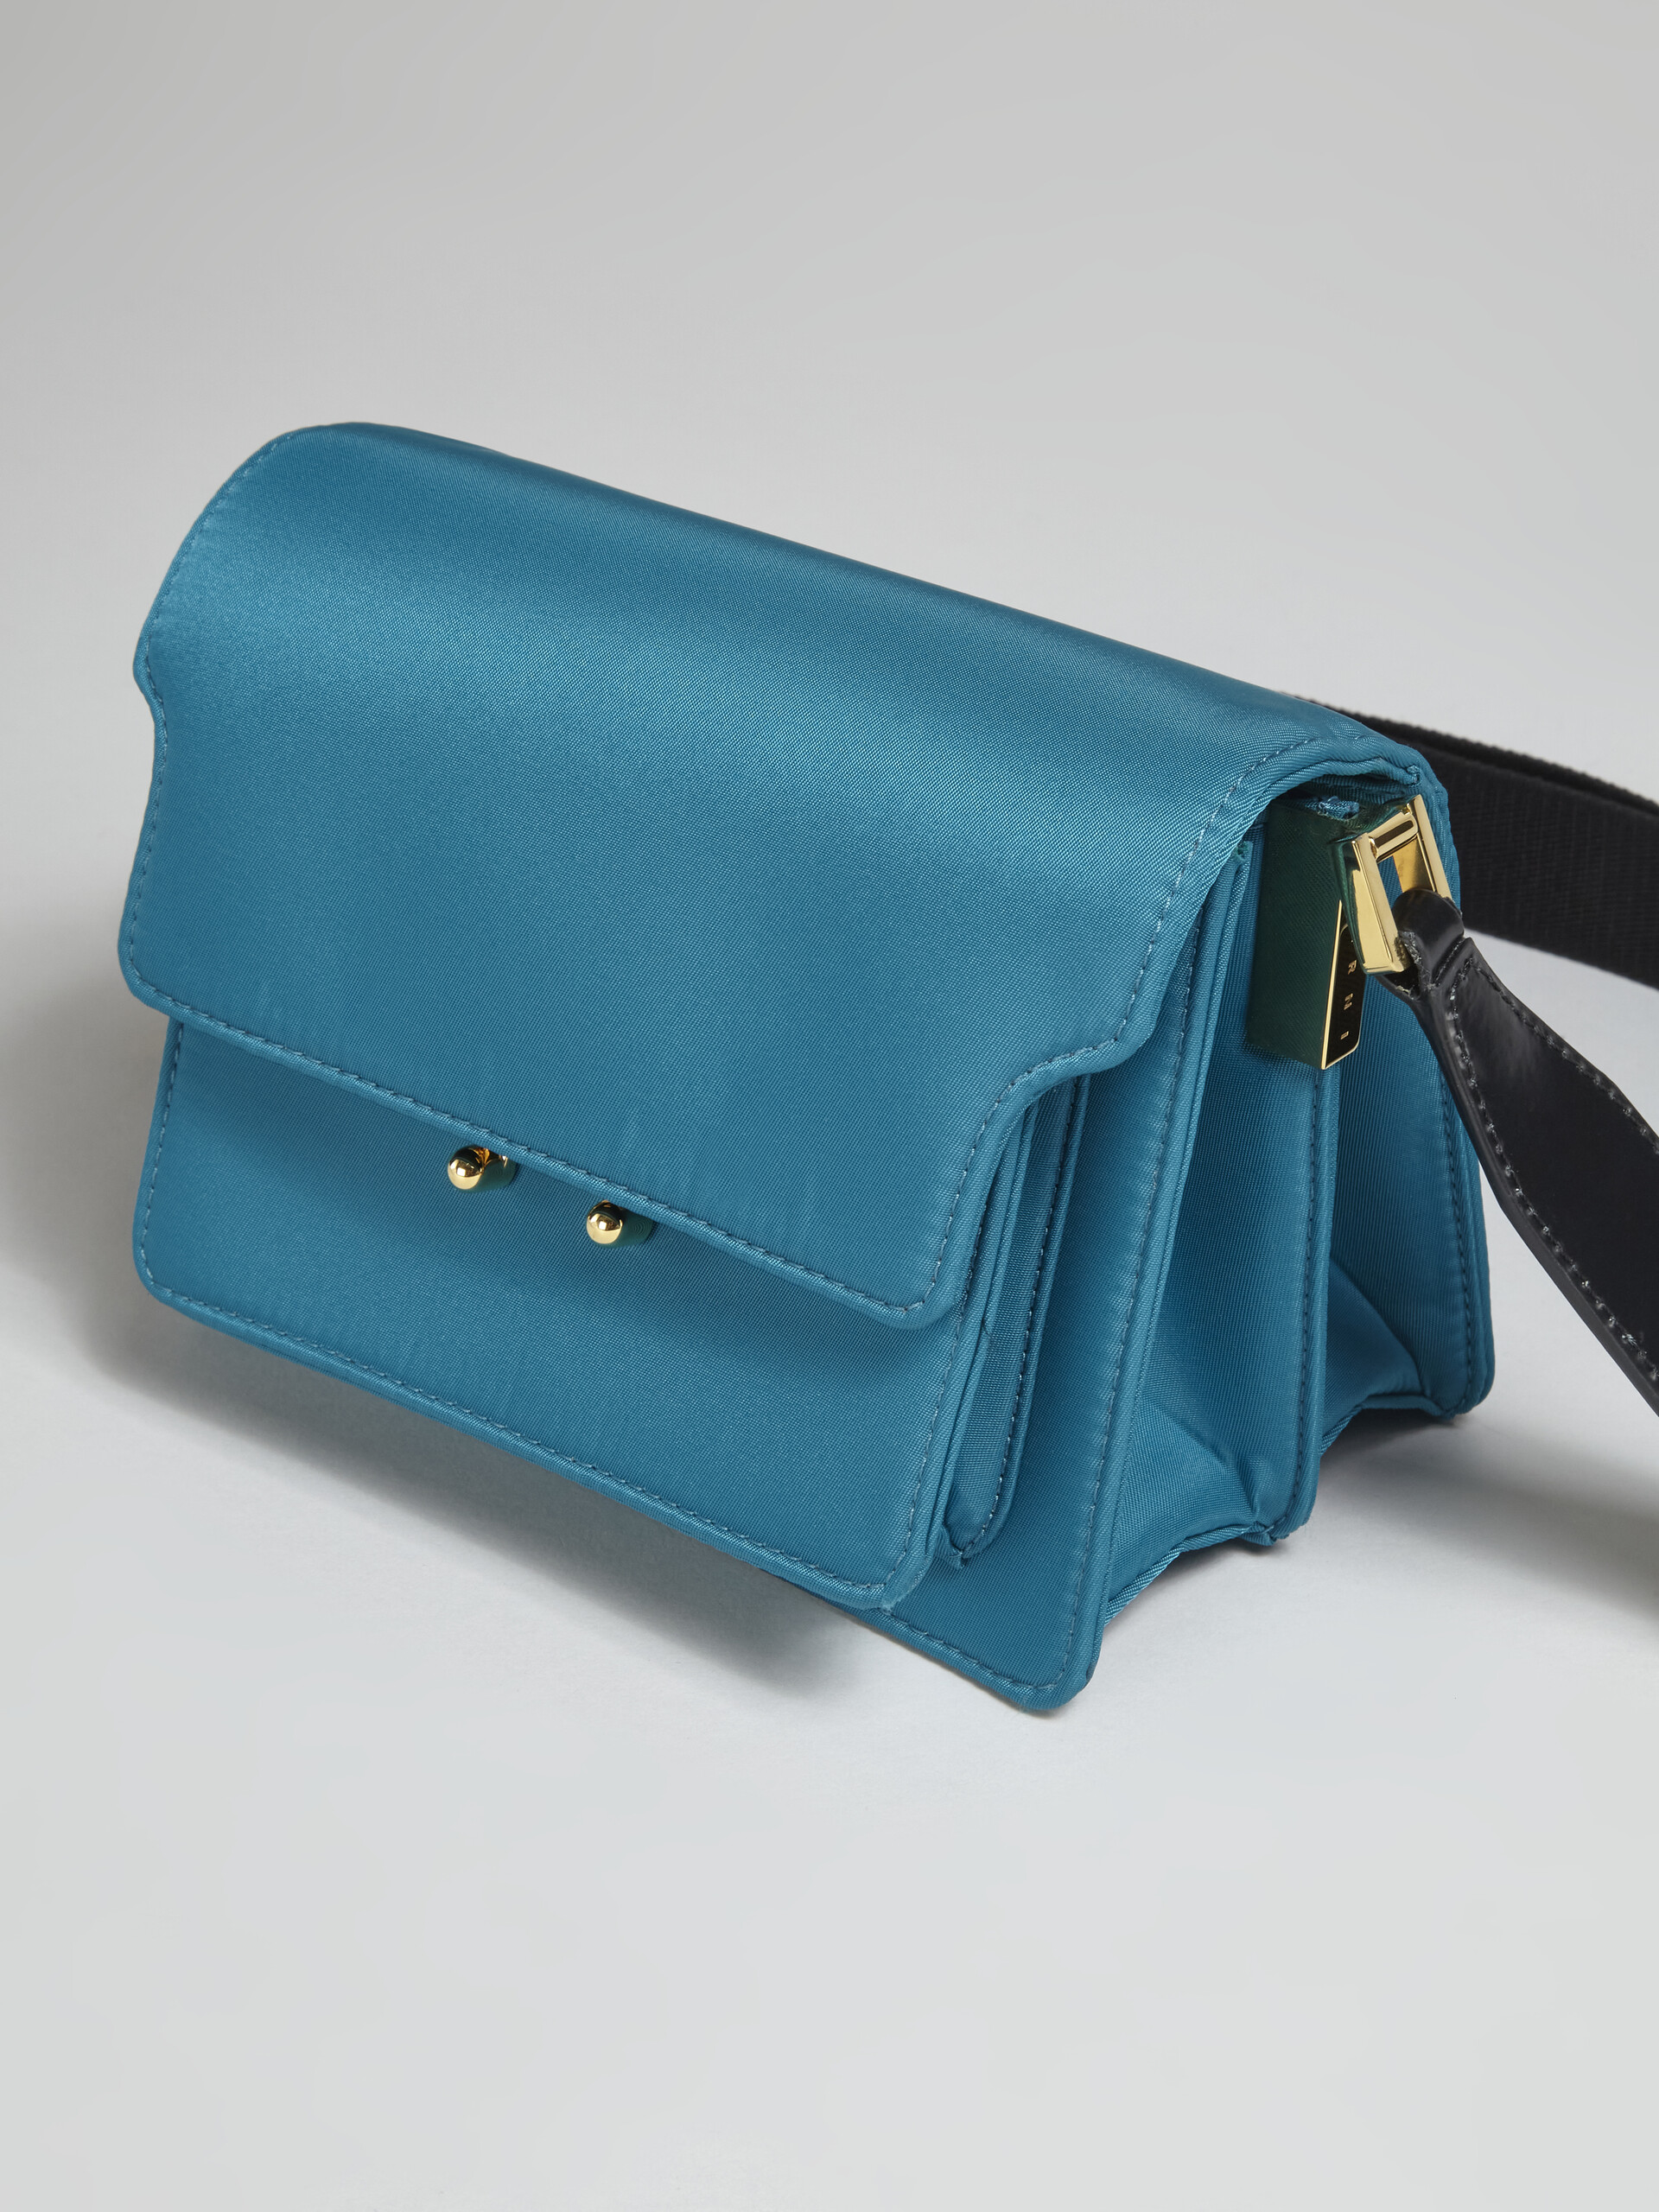 TRUNK LIGHT bag in nylon imbottito blu - Borse a spalla - Image 4